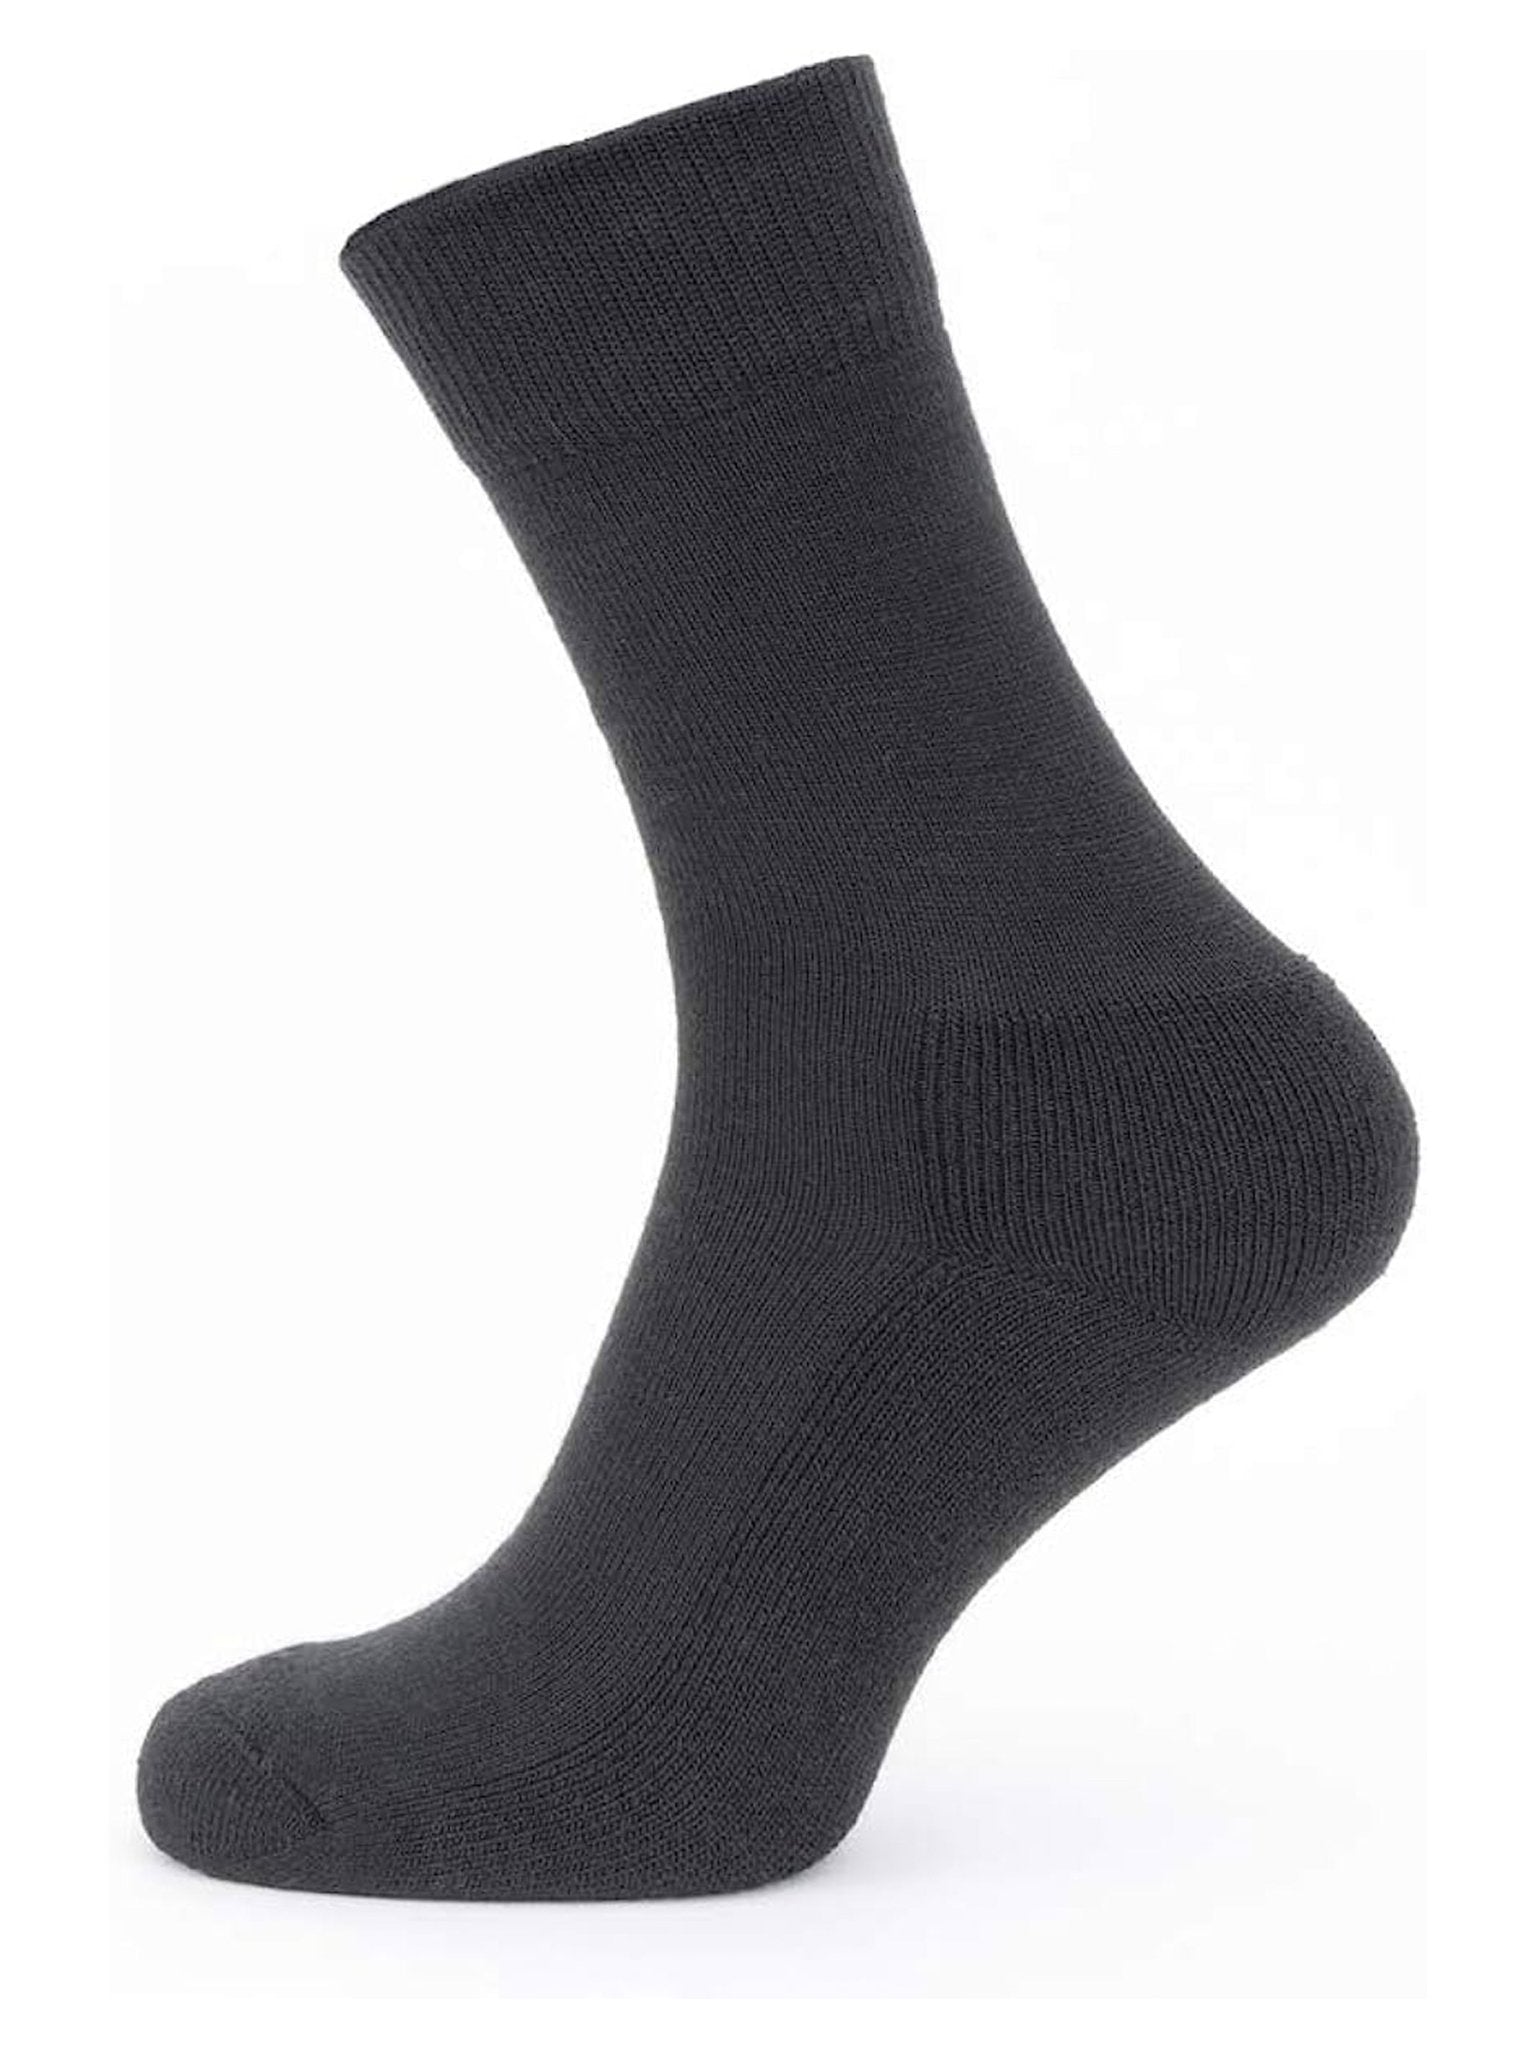 4elementsclothingSealSkinzSealSkinz - Merino Socks / Solo Liner Sock Pair - BlackSocks5055754423136